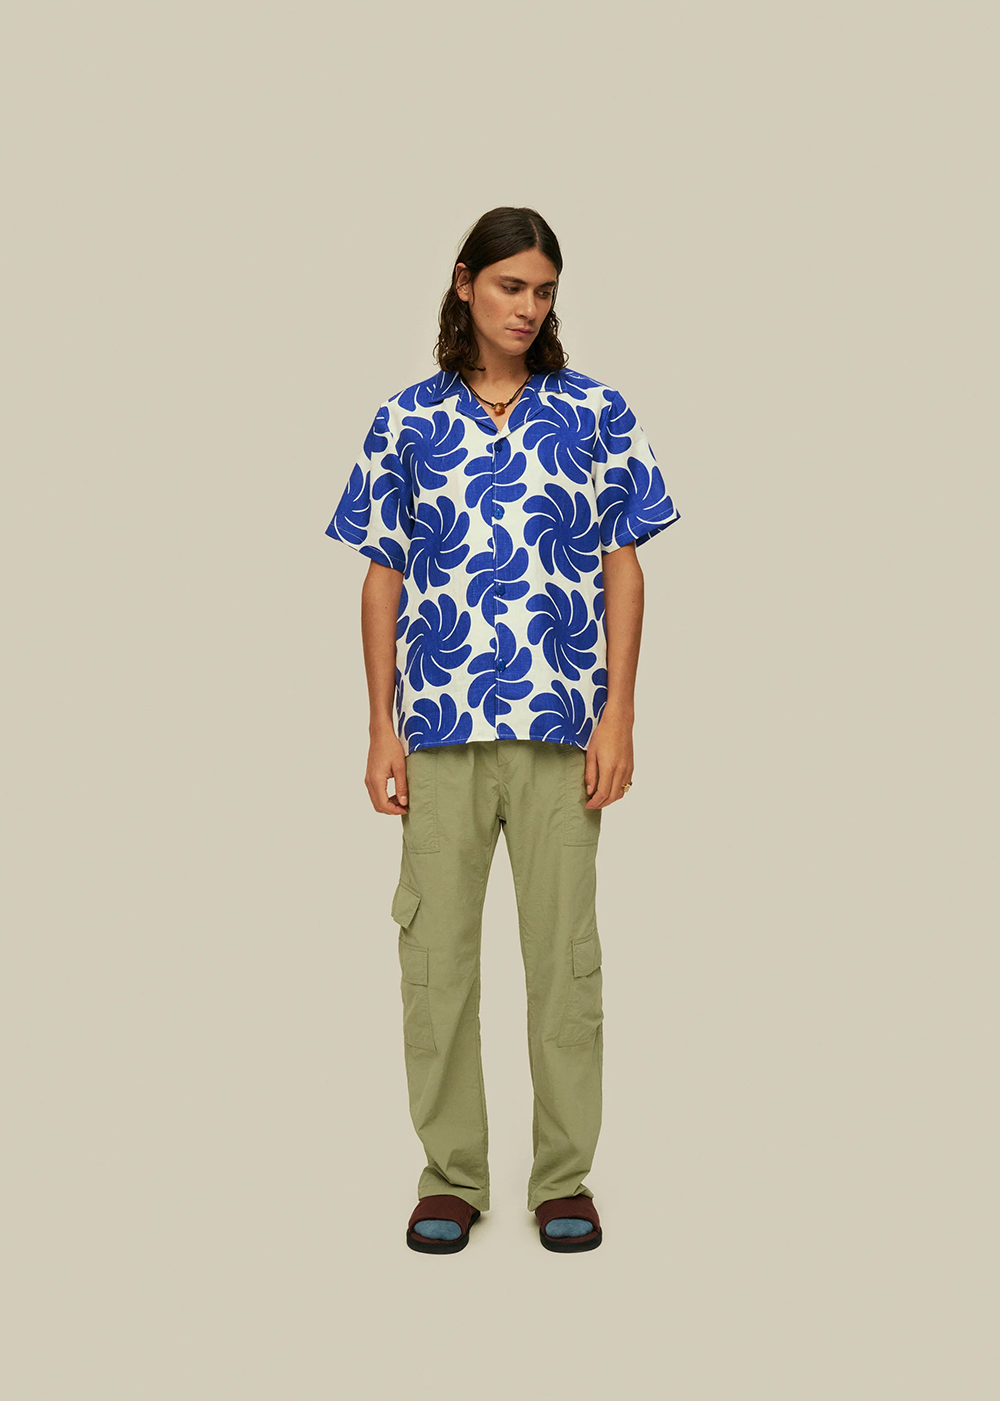 Nebula Cuba Shirt - OAS Company - Danali - 7012-03